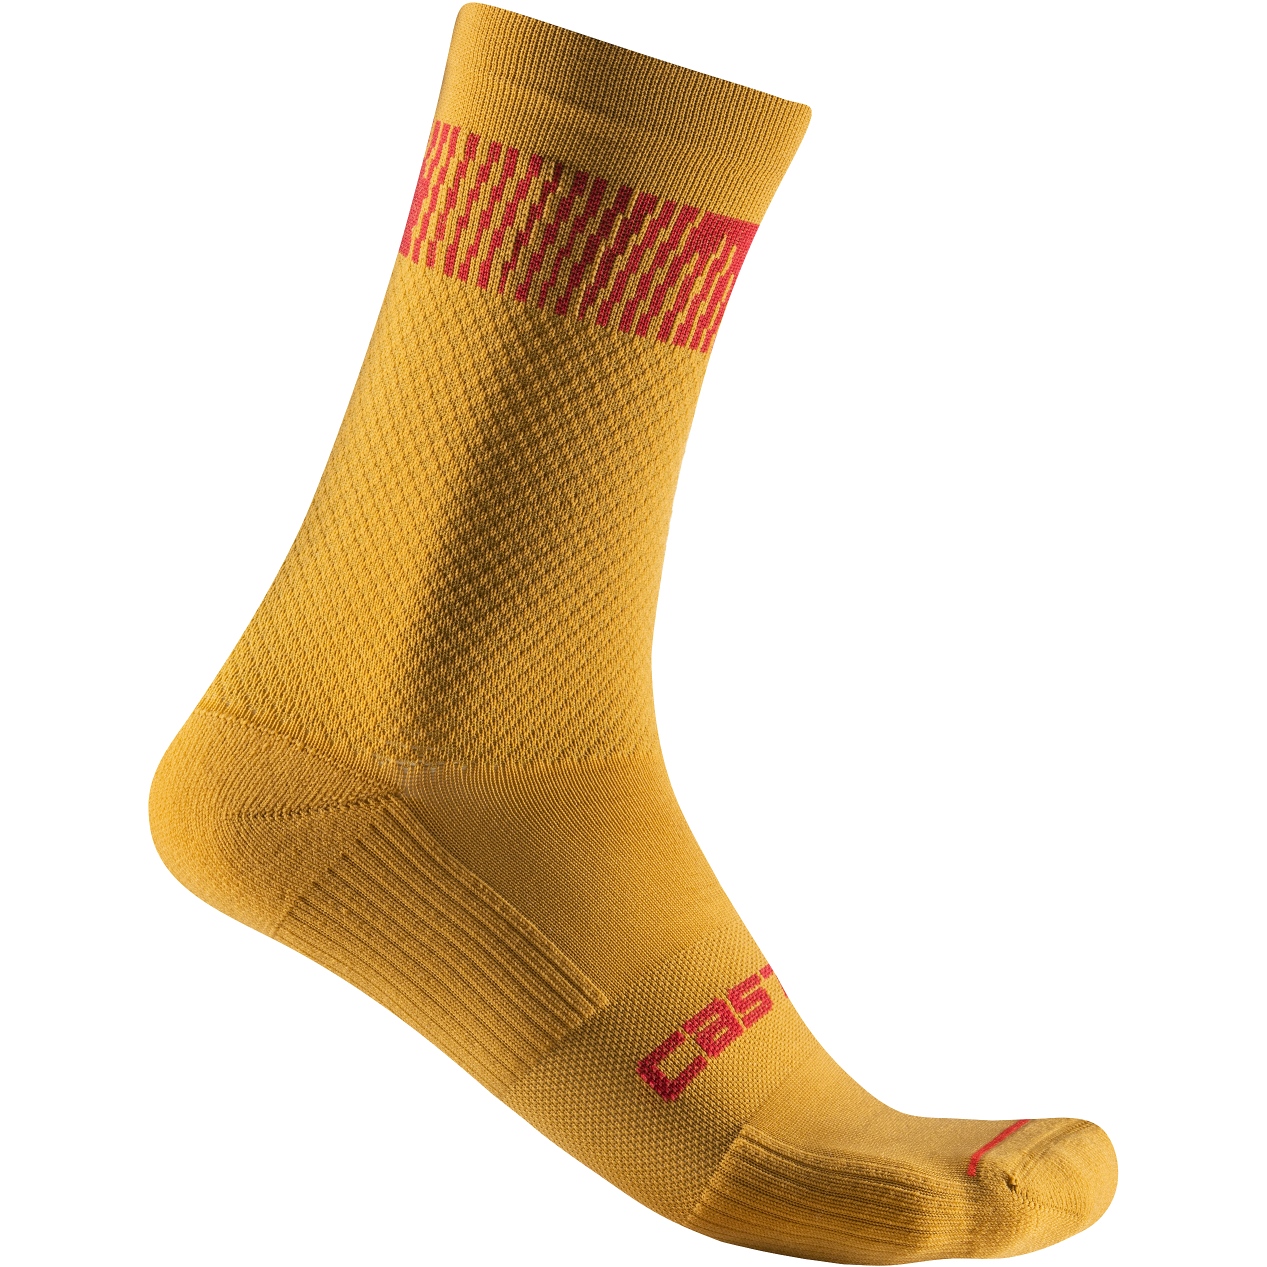 Produktbild von Castelli Unlimited 18 Socken - goldenrod/rich red 755